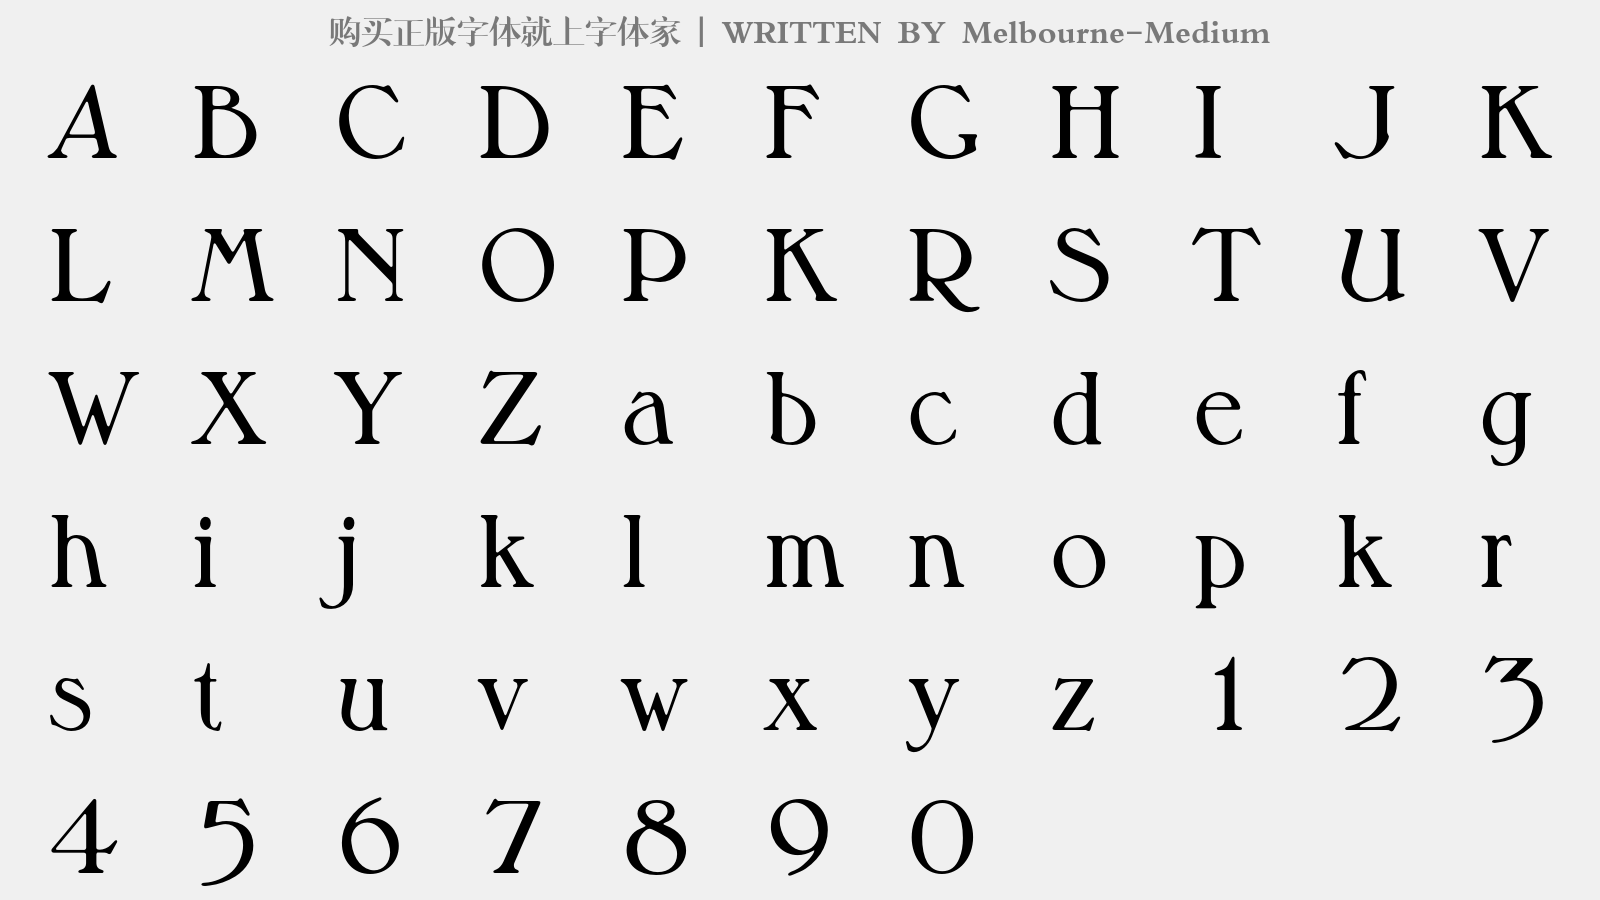 Melbourne-Medium - 大写字母/小写字母/数字